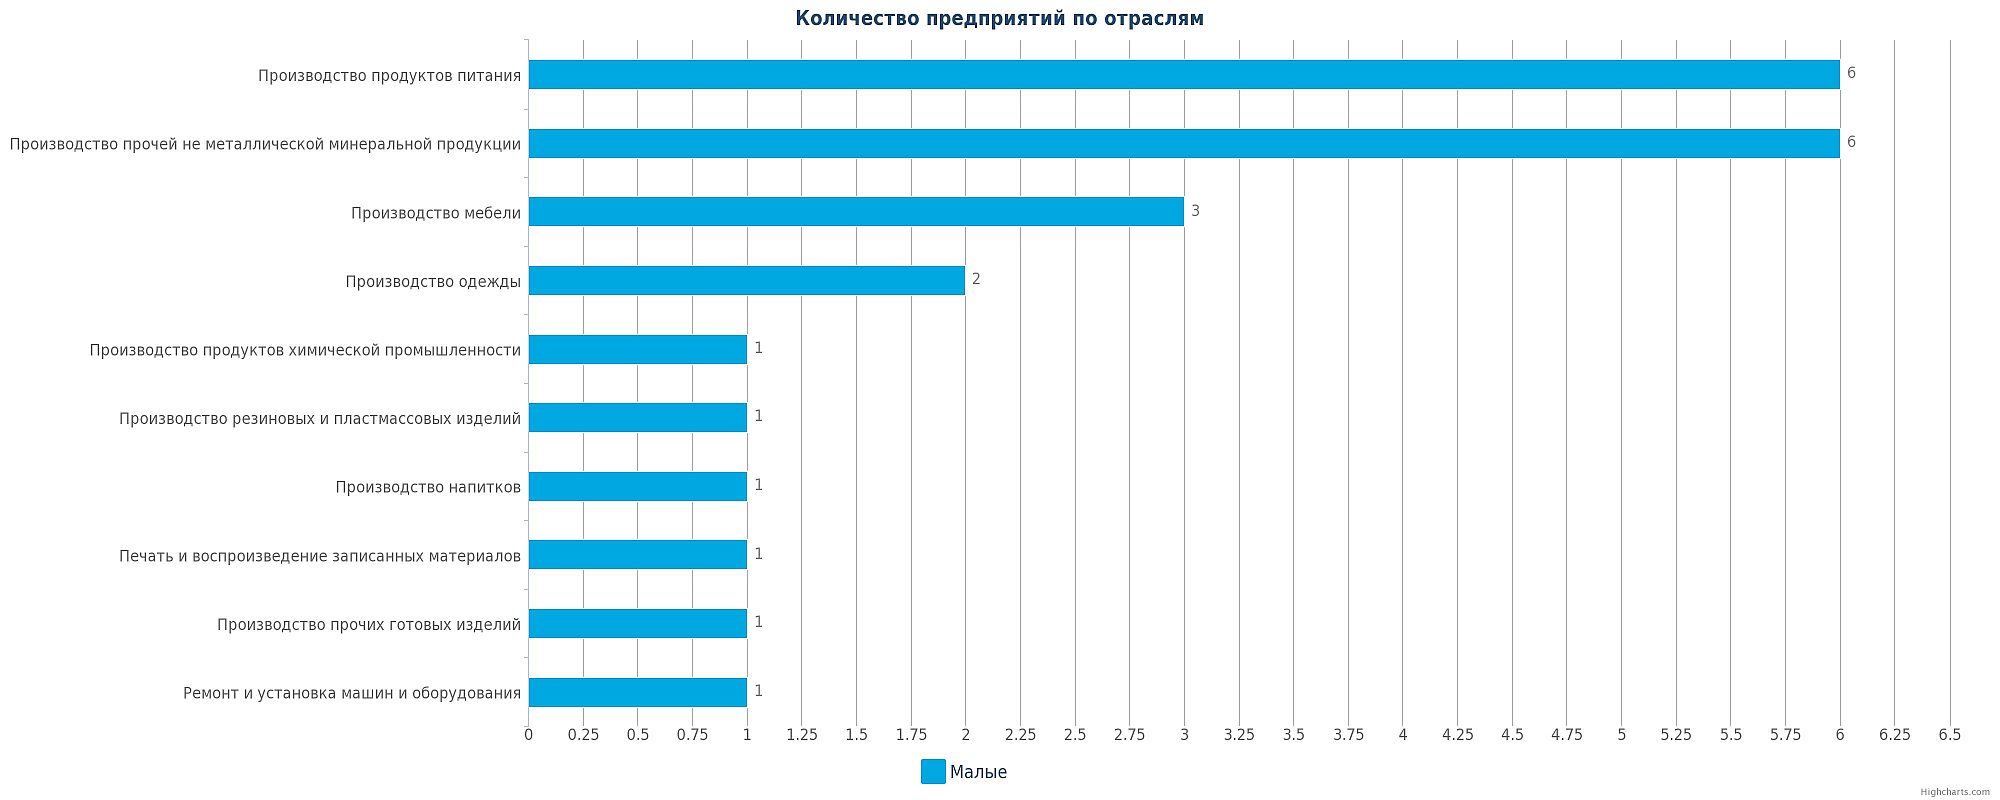 Крупнейшие компании Казахстана по отраслям. Смотря сколько фабрик сколько дитейлс